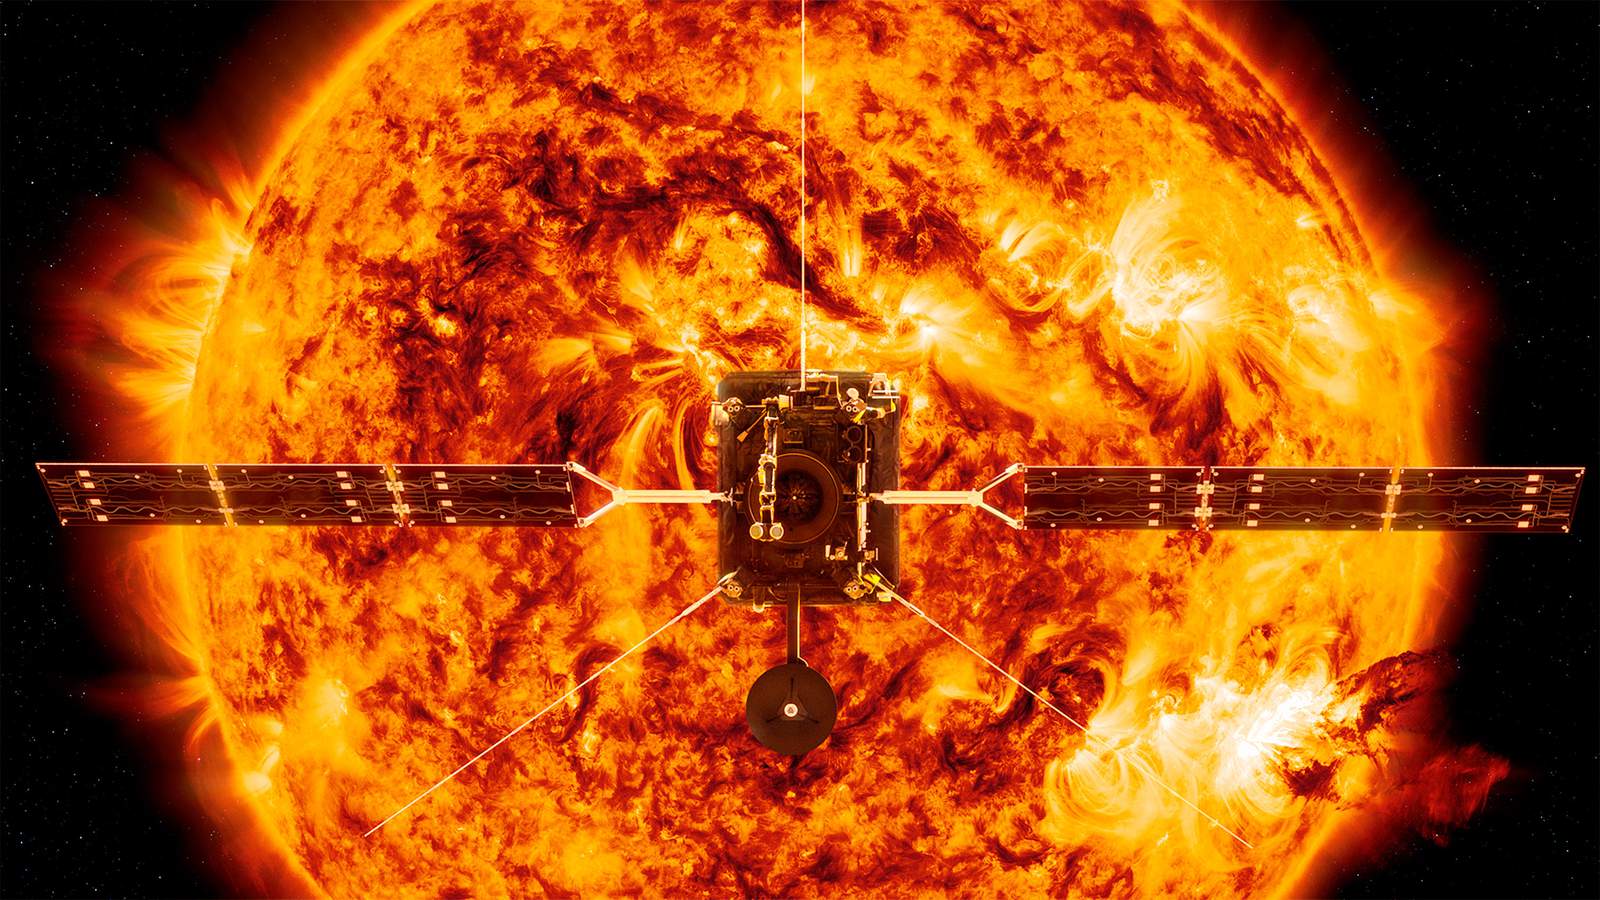 Solar Orbiter blasts off to capture 1st look at sun’s poles